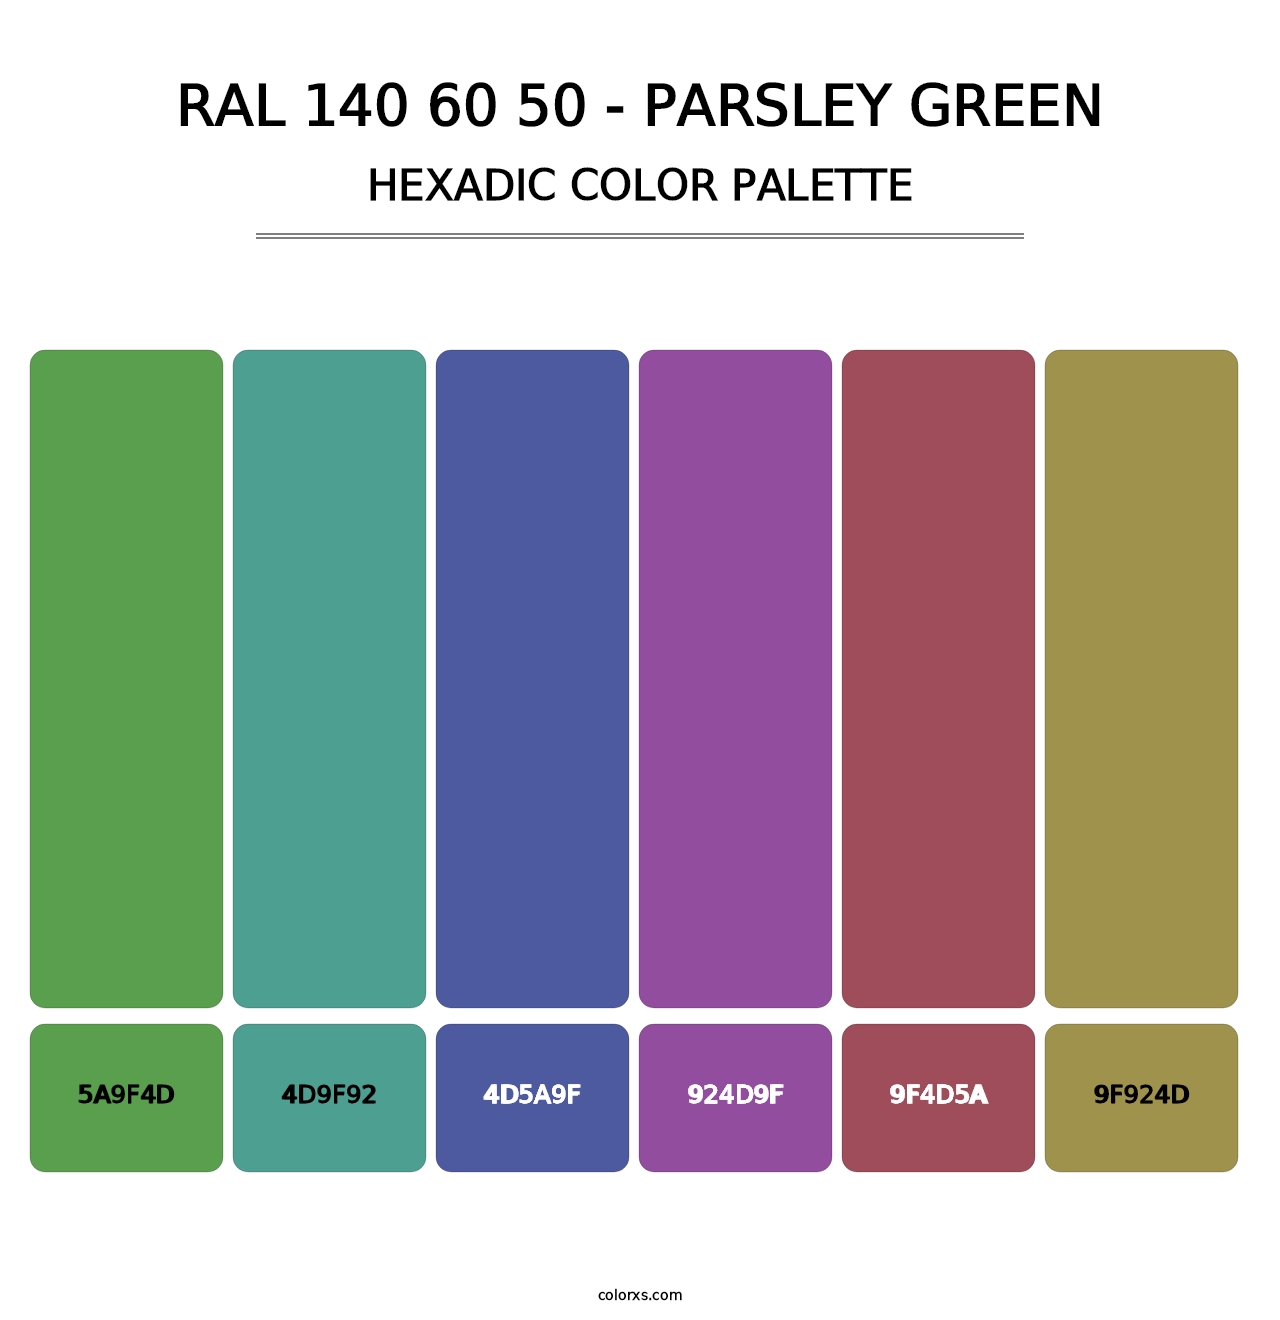 RAL 140 60 50 - Parsley Green - Hexadic Color Palette